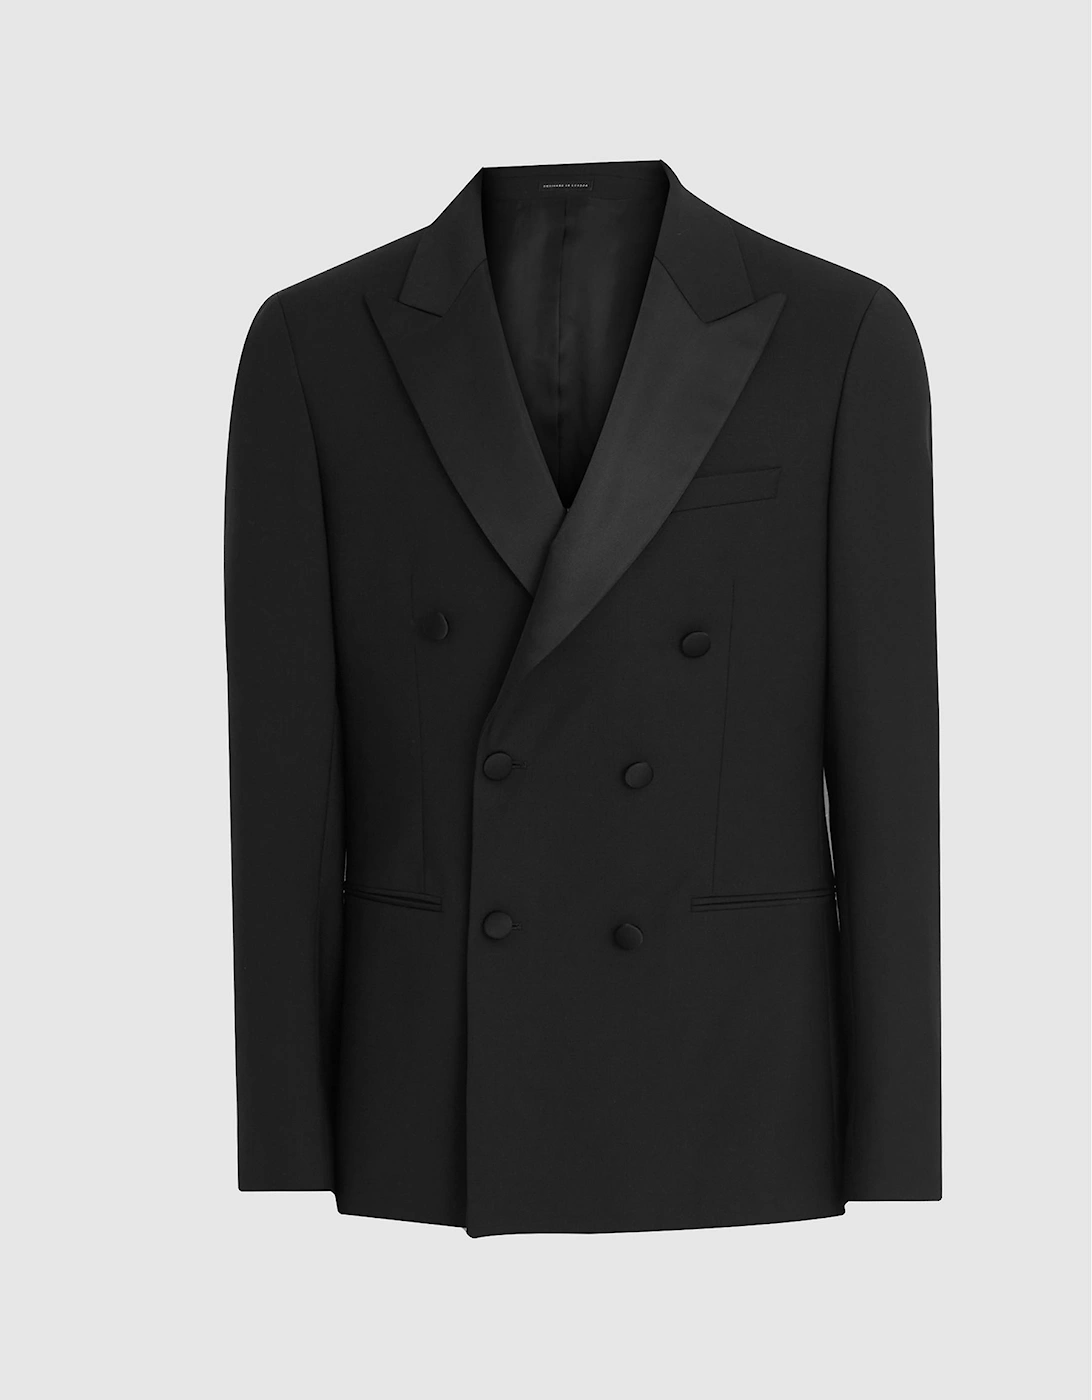 Satin Double Breasted Tuxedo Jacket, 2 of 1